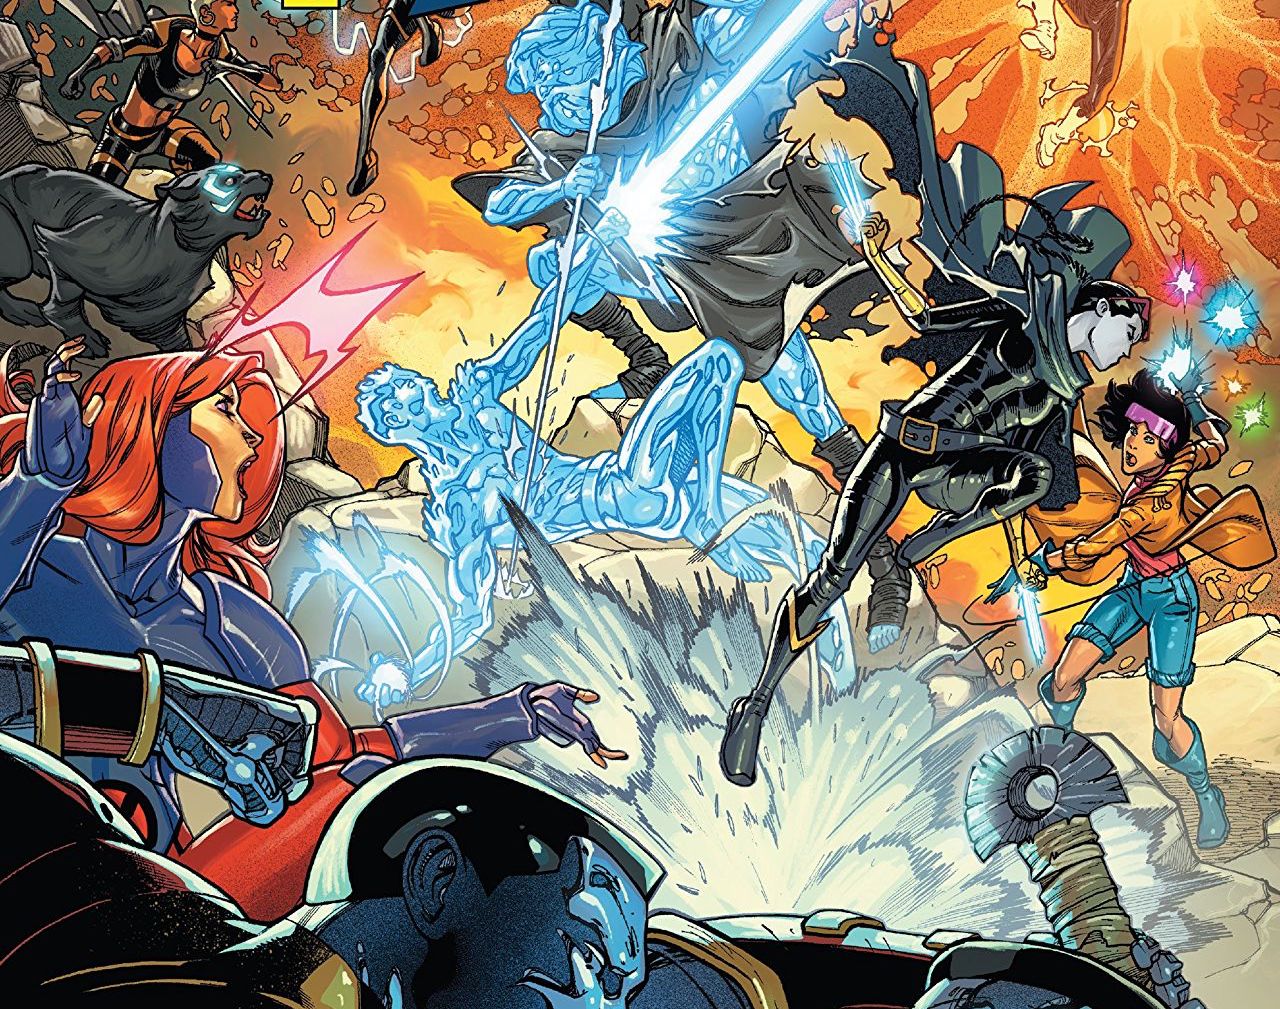 EXCLUSIVE Marvel Preview: Uncanny X-Men Winter's End #1